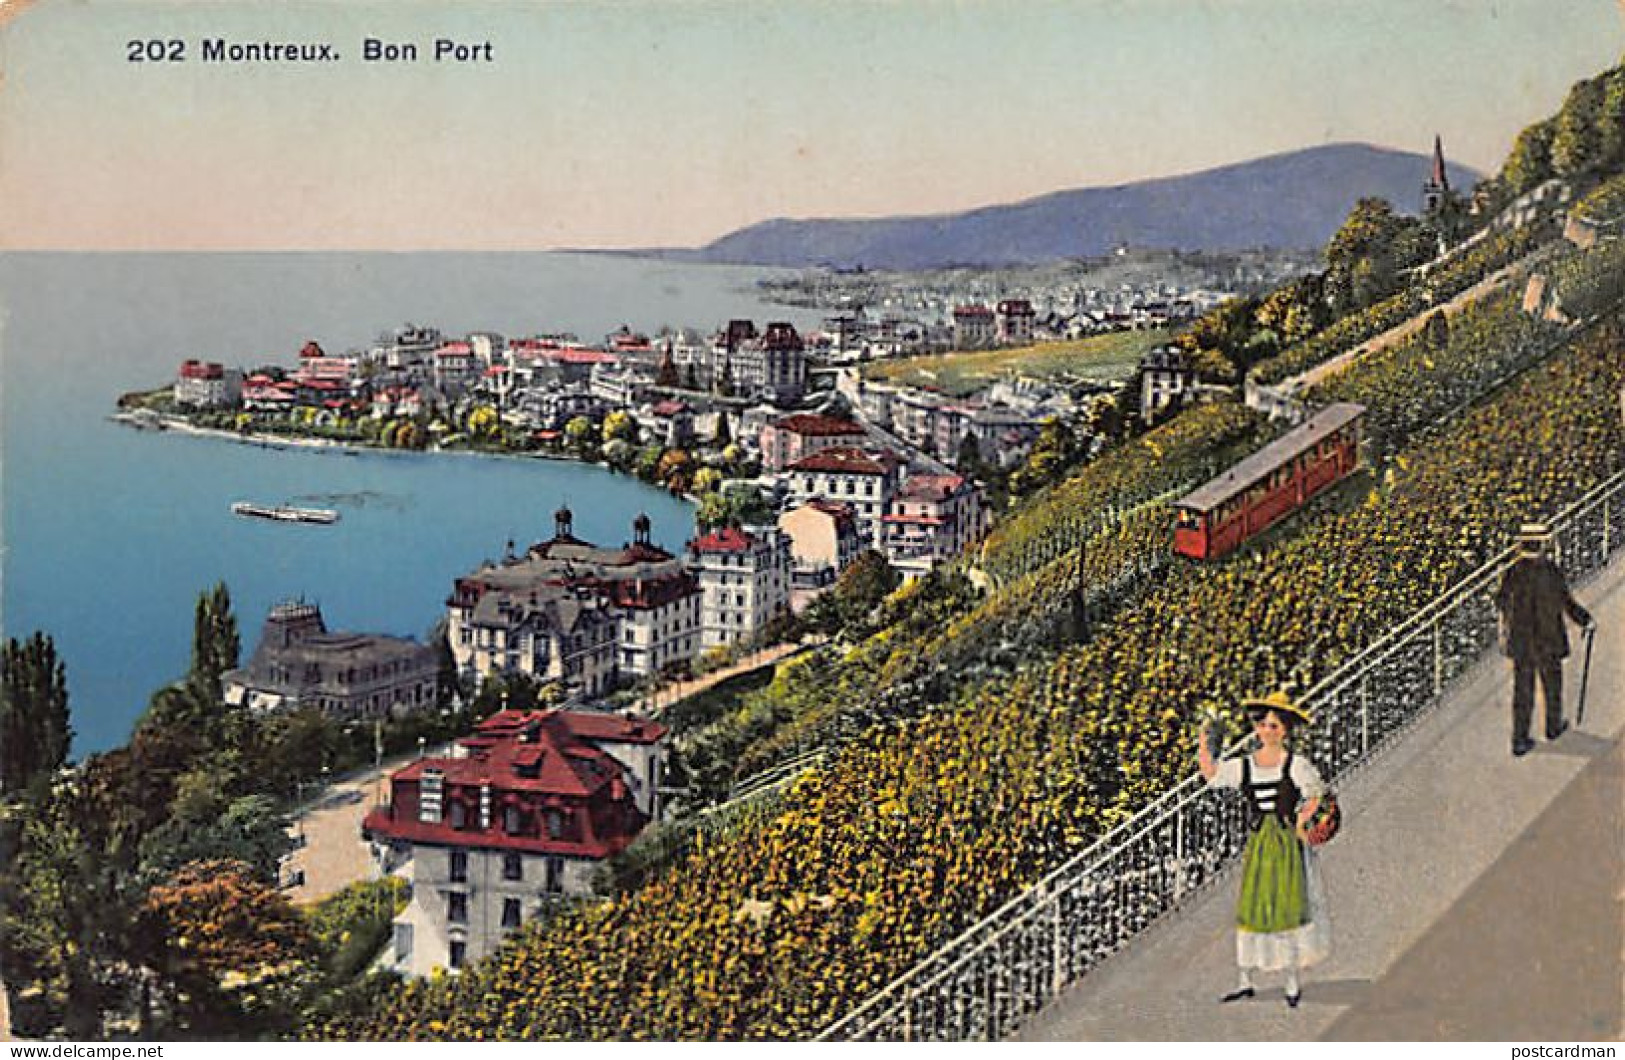 Suisse - MONTREUX (VD) - Bon Port - Funiculaire - Ed. C.P.N. 202 - Montreux